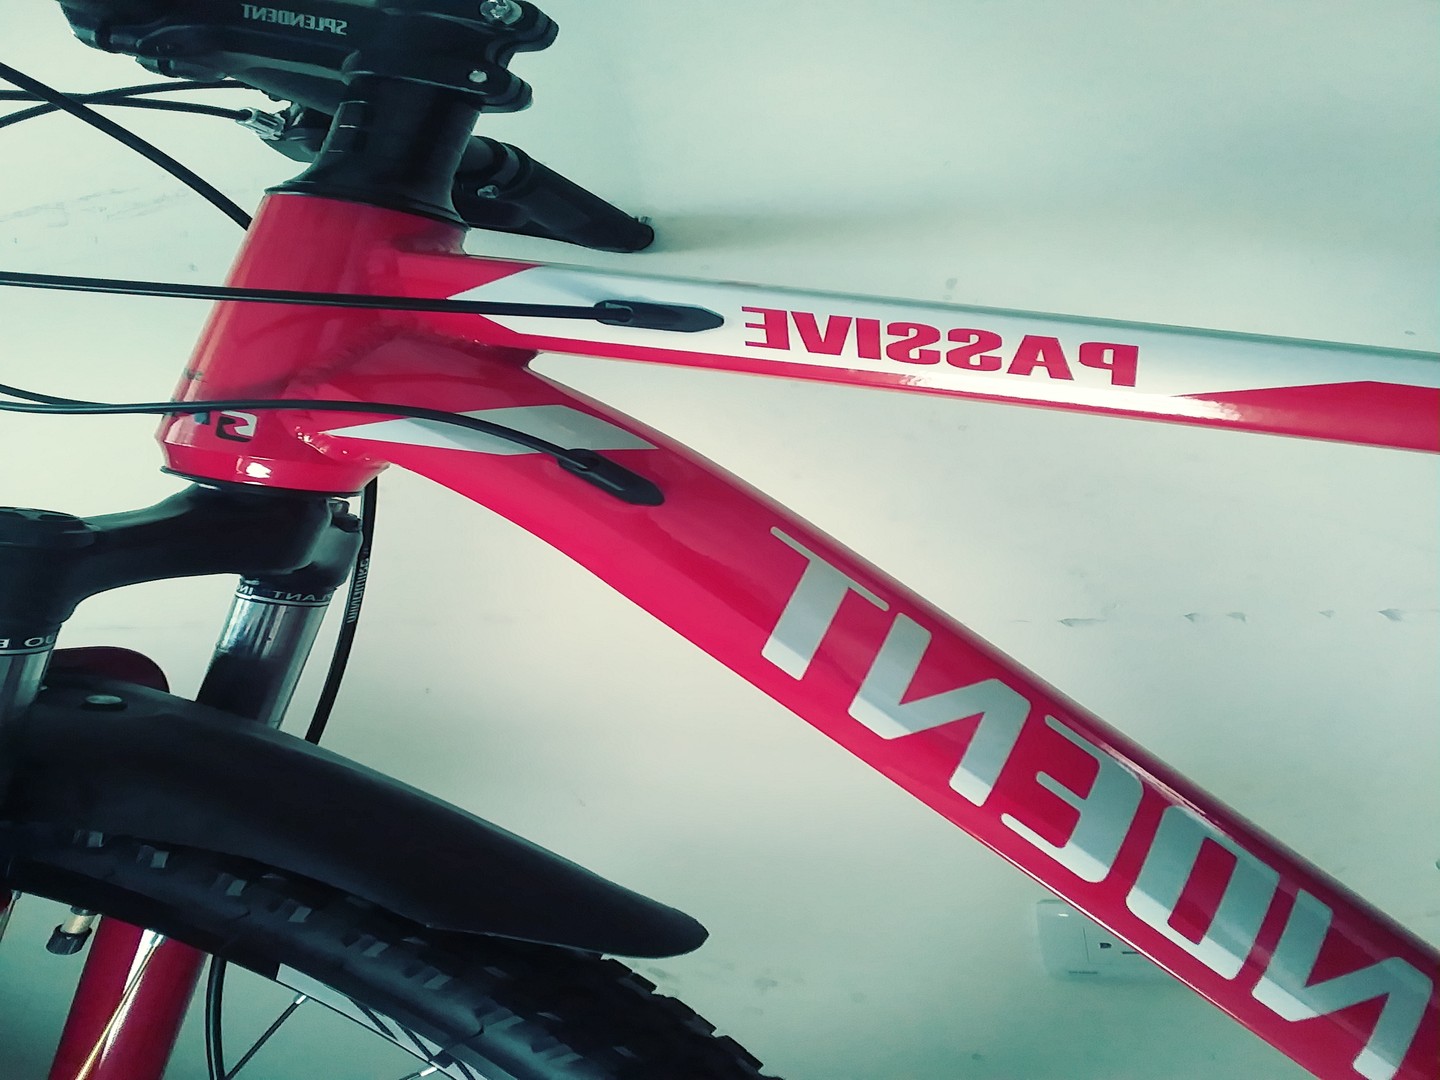 bicicletas y accesorios - Bicicleta splendent aro 29